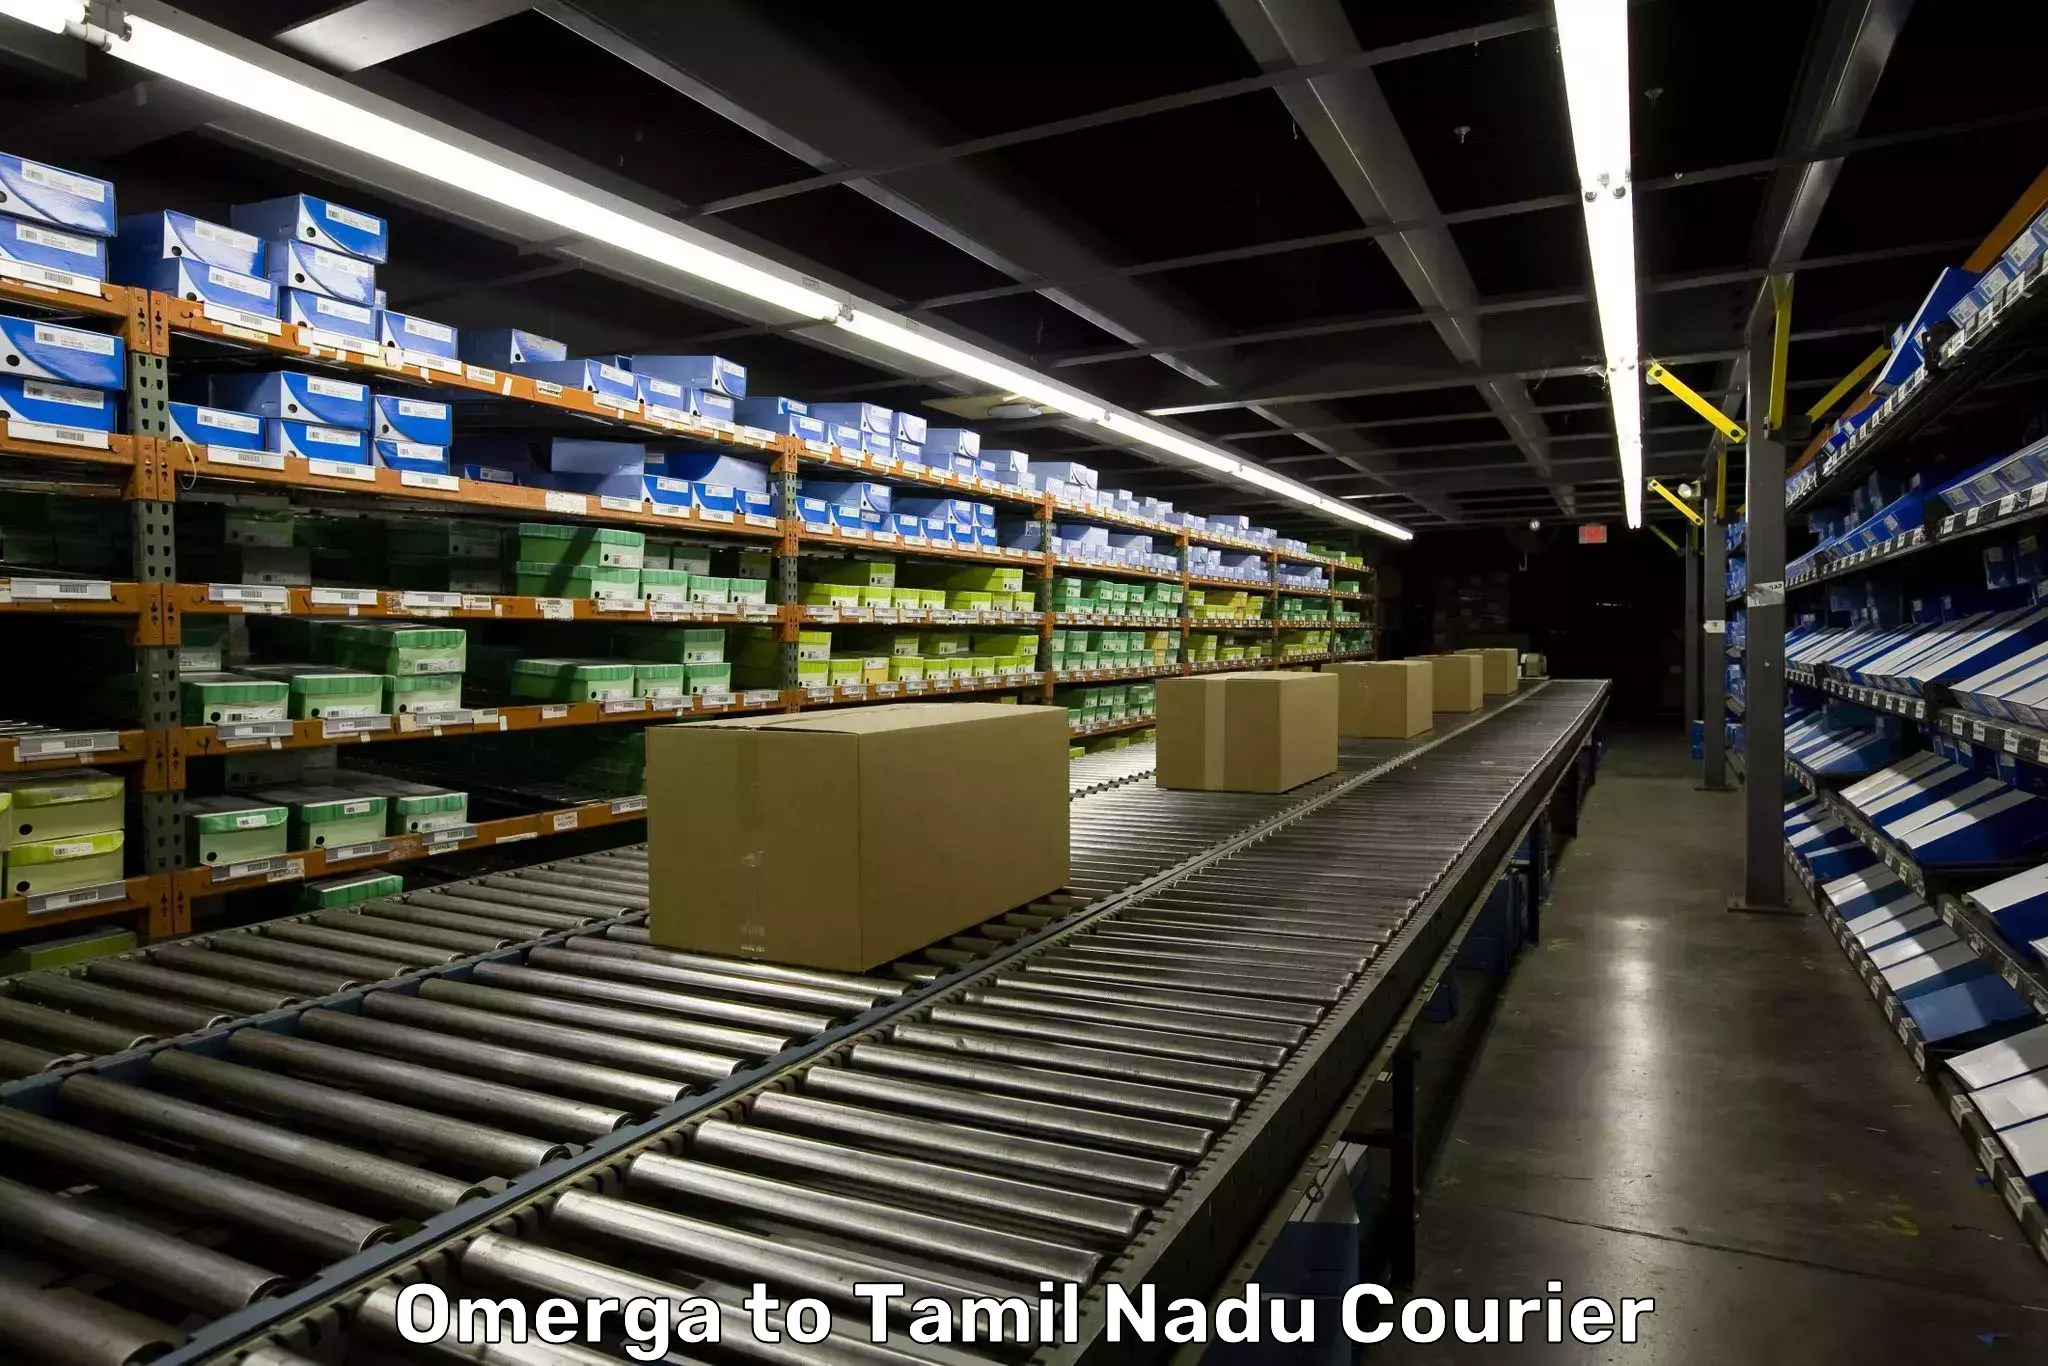 Reliable luggage courier Omerga to IIIT Tiruchirappalli